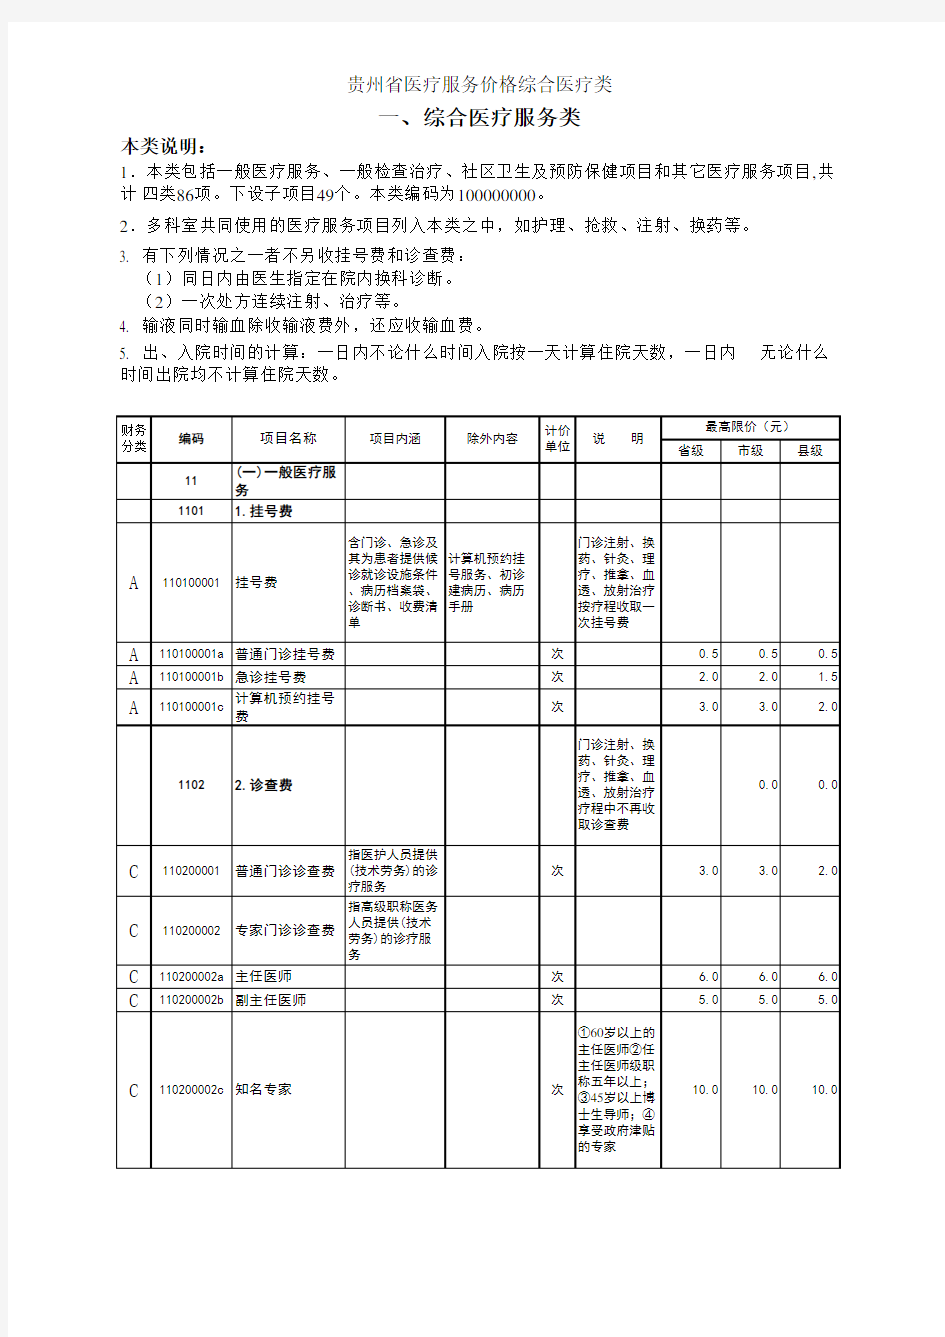 贵州省医疗服务价格表 版 